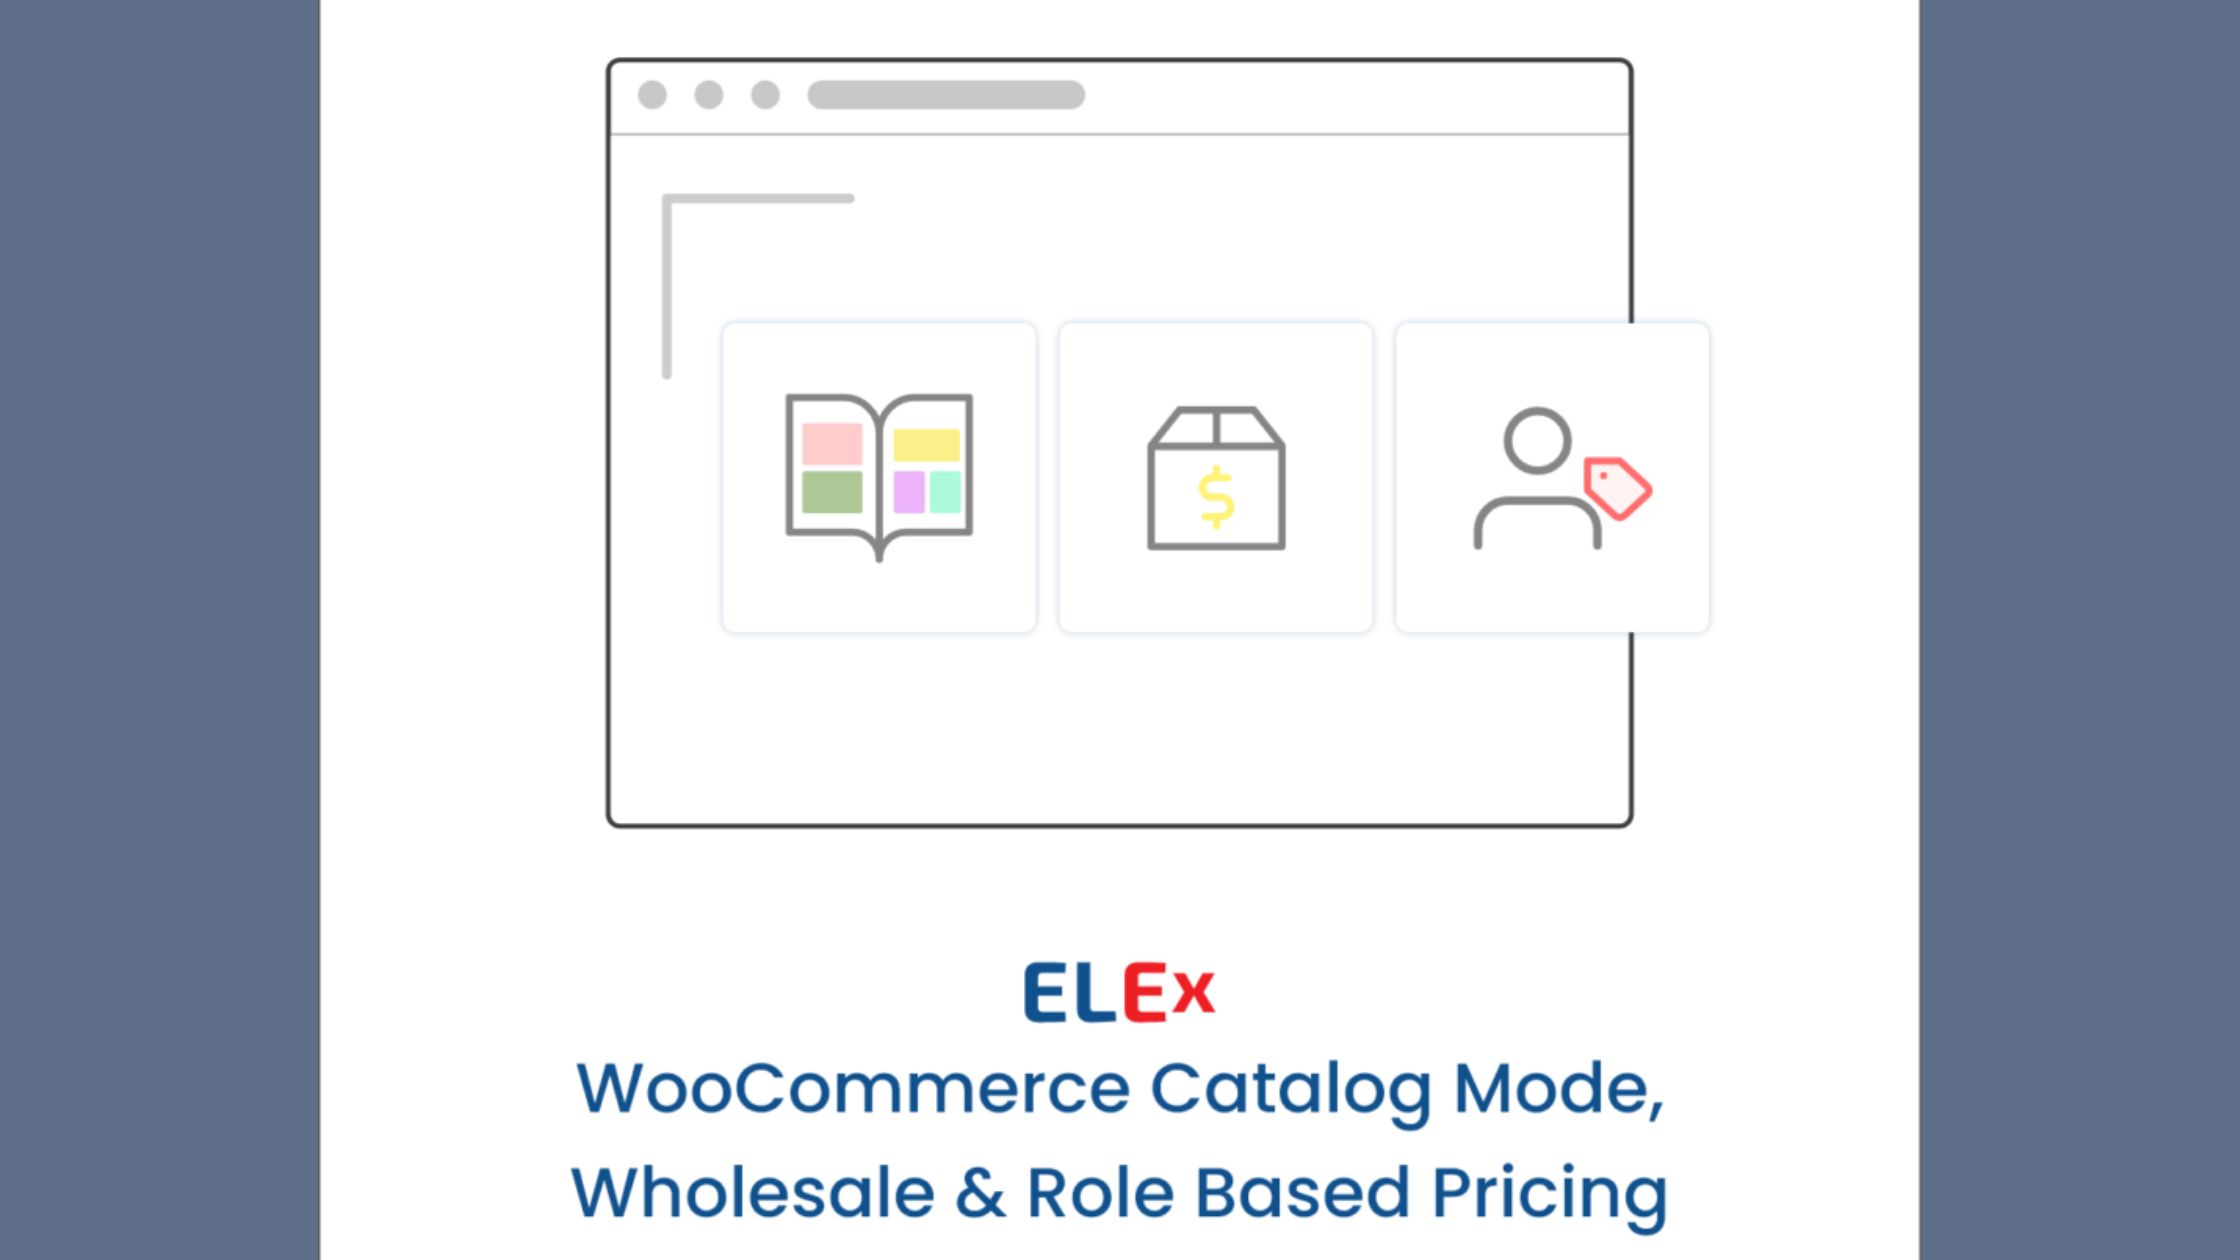 ELEX WooCommerce Catalog Mode